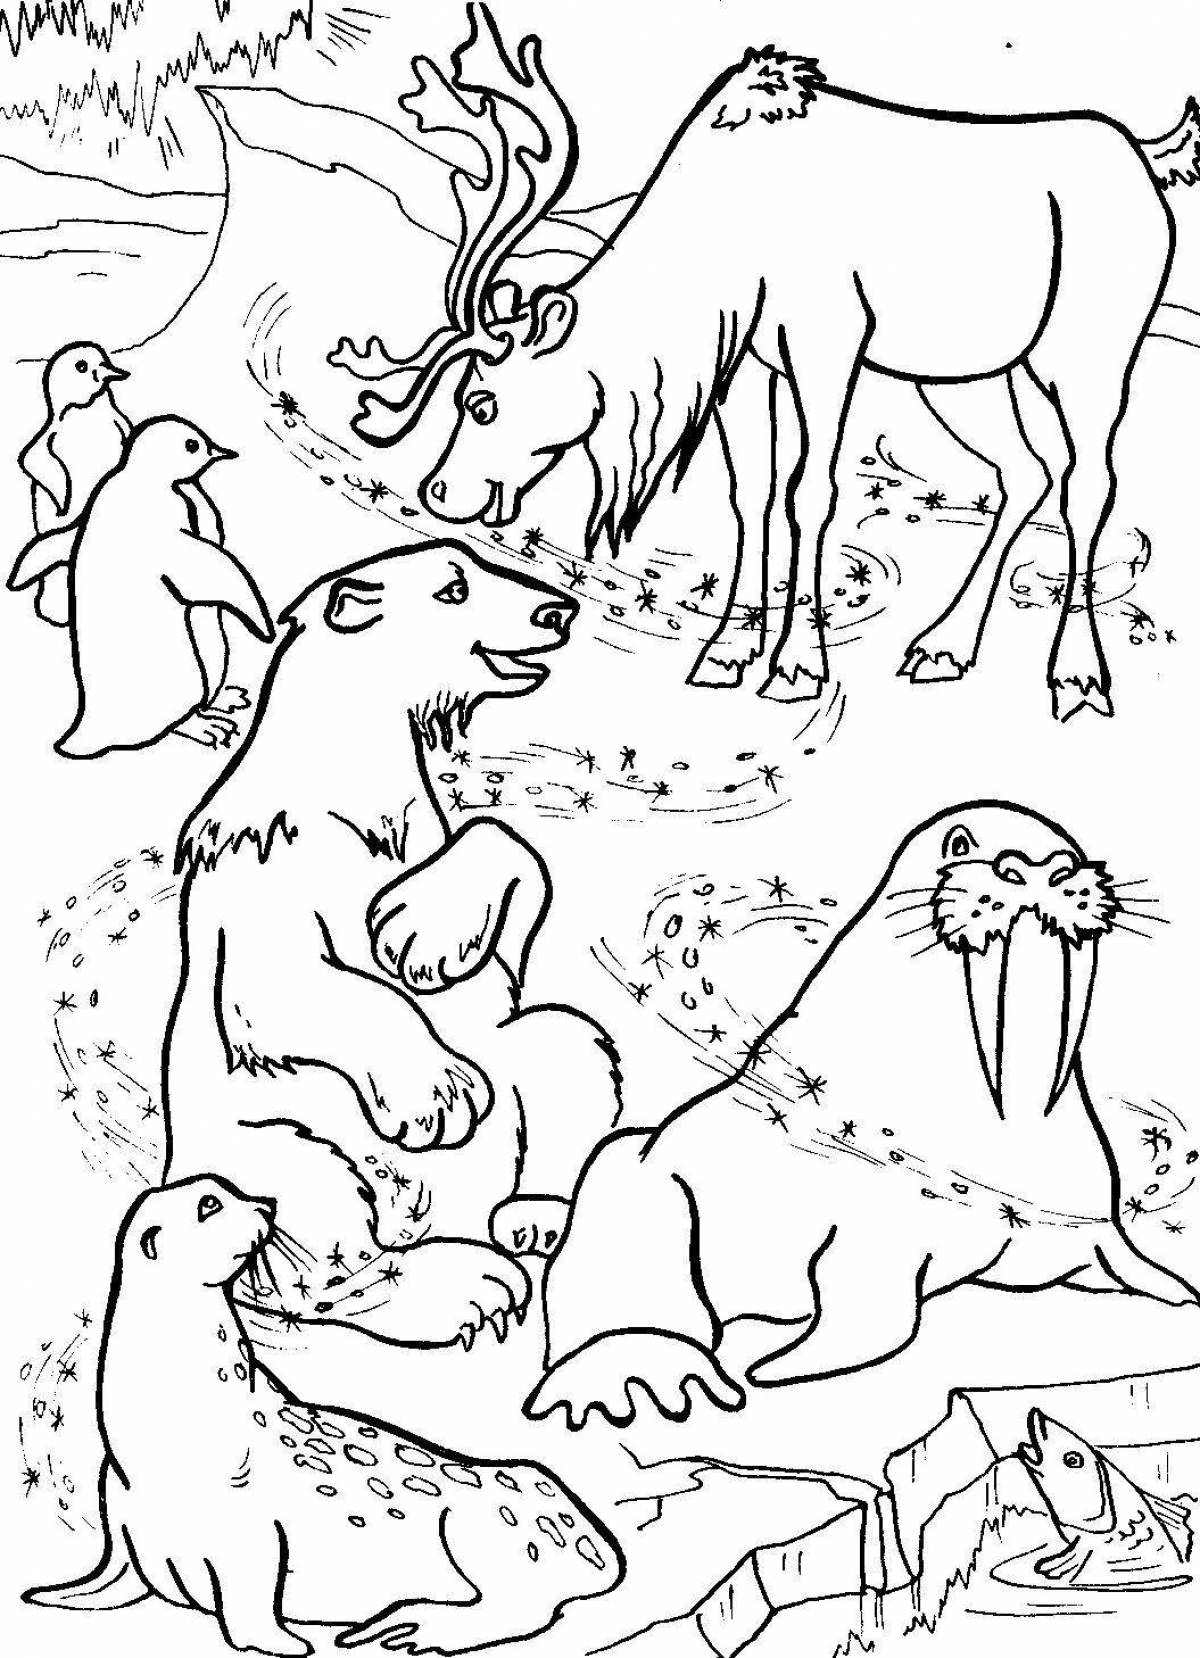 Учимся рисовать животных жарких стран . Школа юного художника , Флер , г. 53,90р.